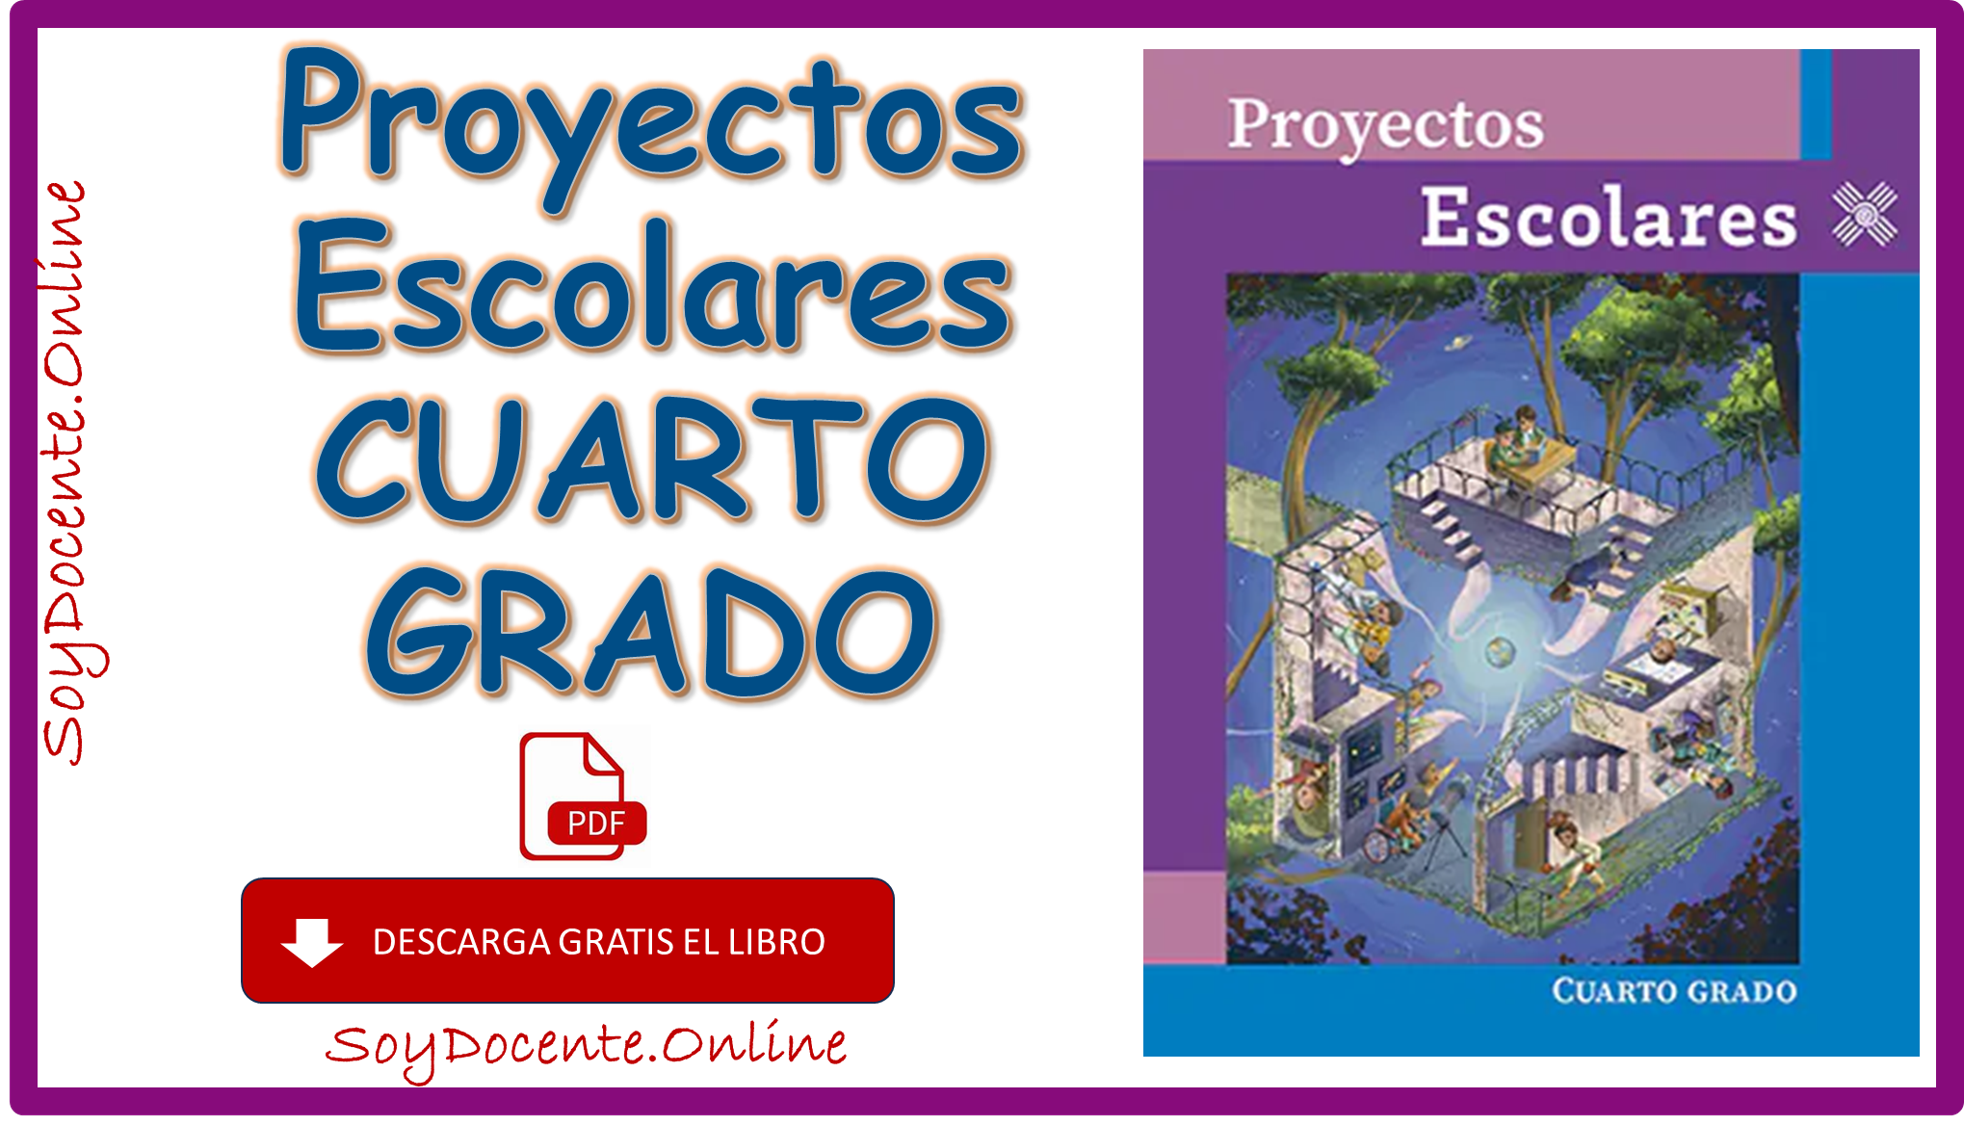 Descarga en formato de PDF Libro de Proyectos escolares cuarto grado de Primaria, obra de la SEP, distribuido por CONALITEG